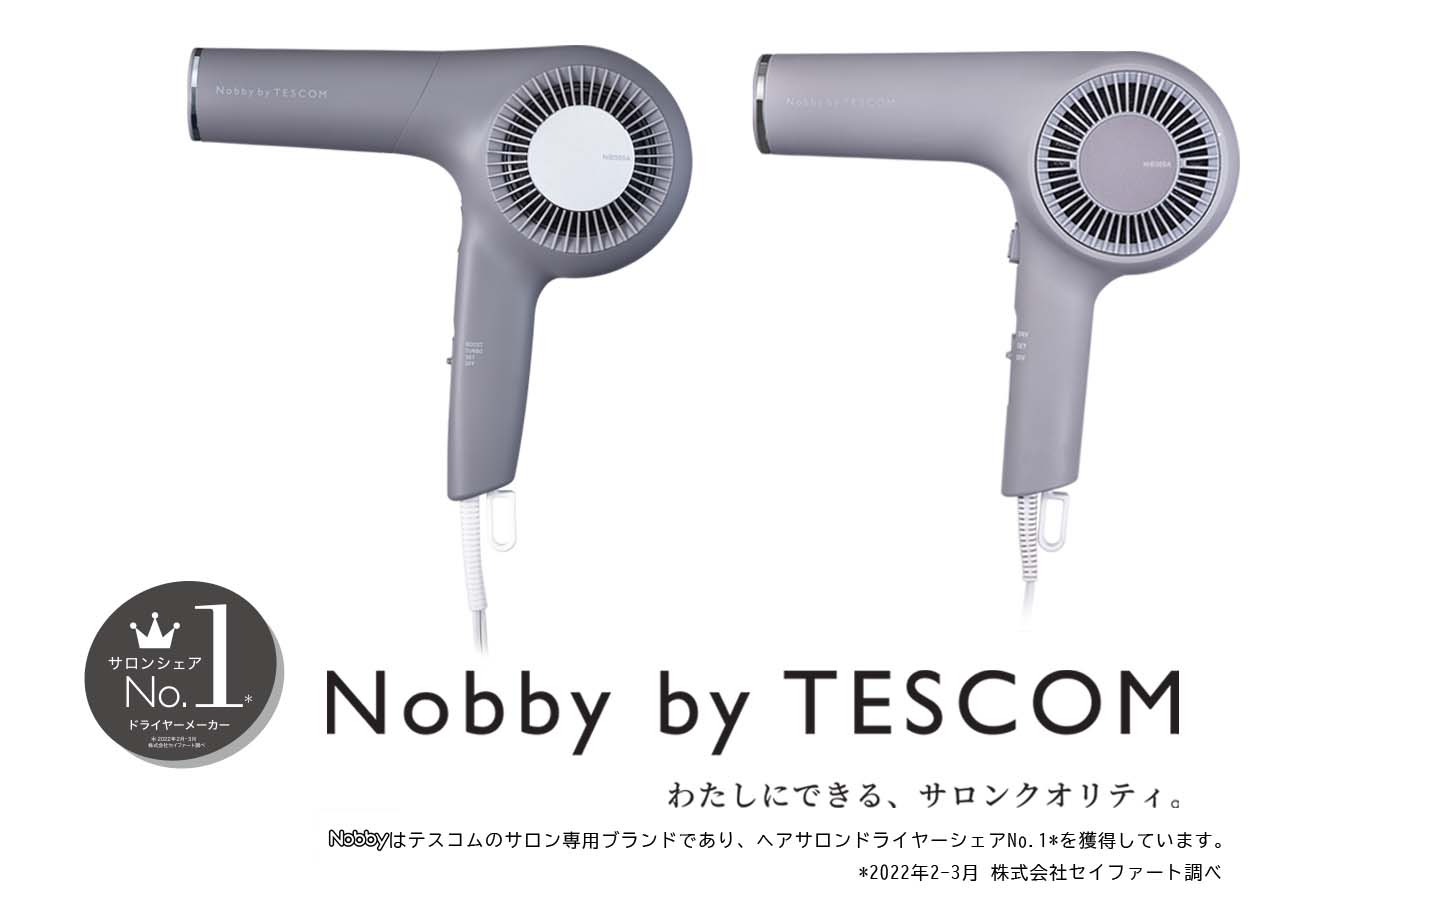 Nobby by TESCOM」のブランド史上最もパワフルな風速・風圧を実現 地肌から素早く乾かし、サロン仕上がりの美しい髪に導く  「プロフェッショナル プロテクトイオン ヘアードライヤー NIB500A」 2022年5月20日（金）発売  ～同シリーズの軽量モデル「NIB300A」も同時発売 ...